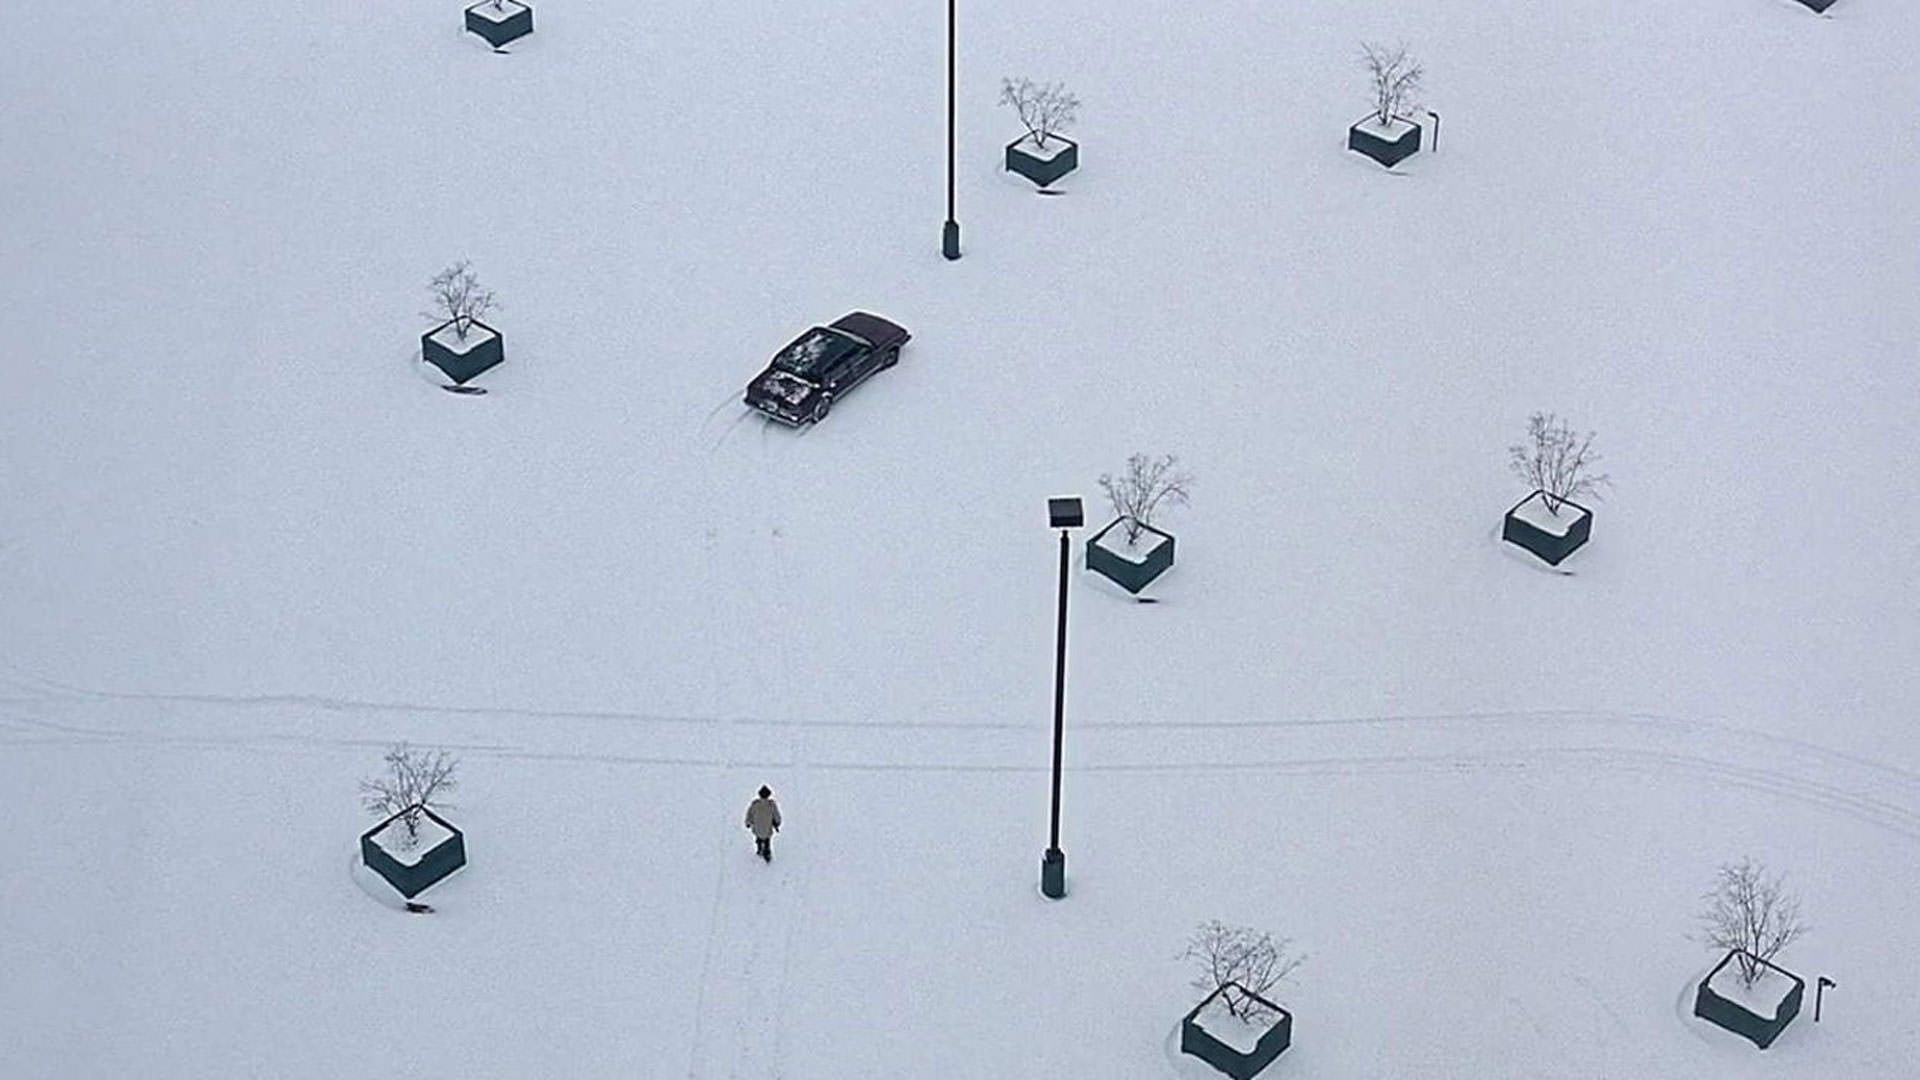 نمایی باز از برف، چند درخت و یک ماشین در فیلم فارگو به کارگردانی برادران کوئن